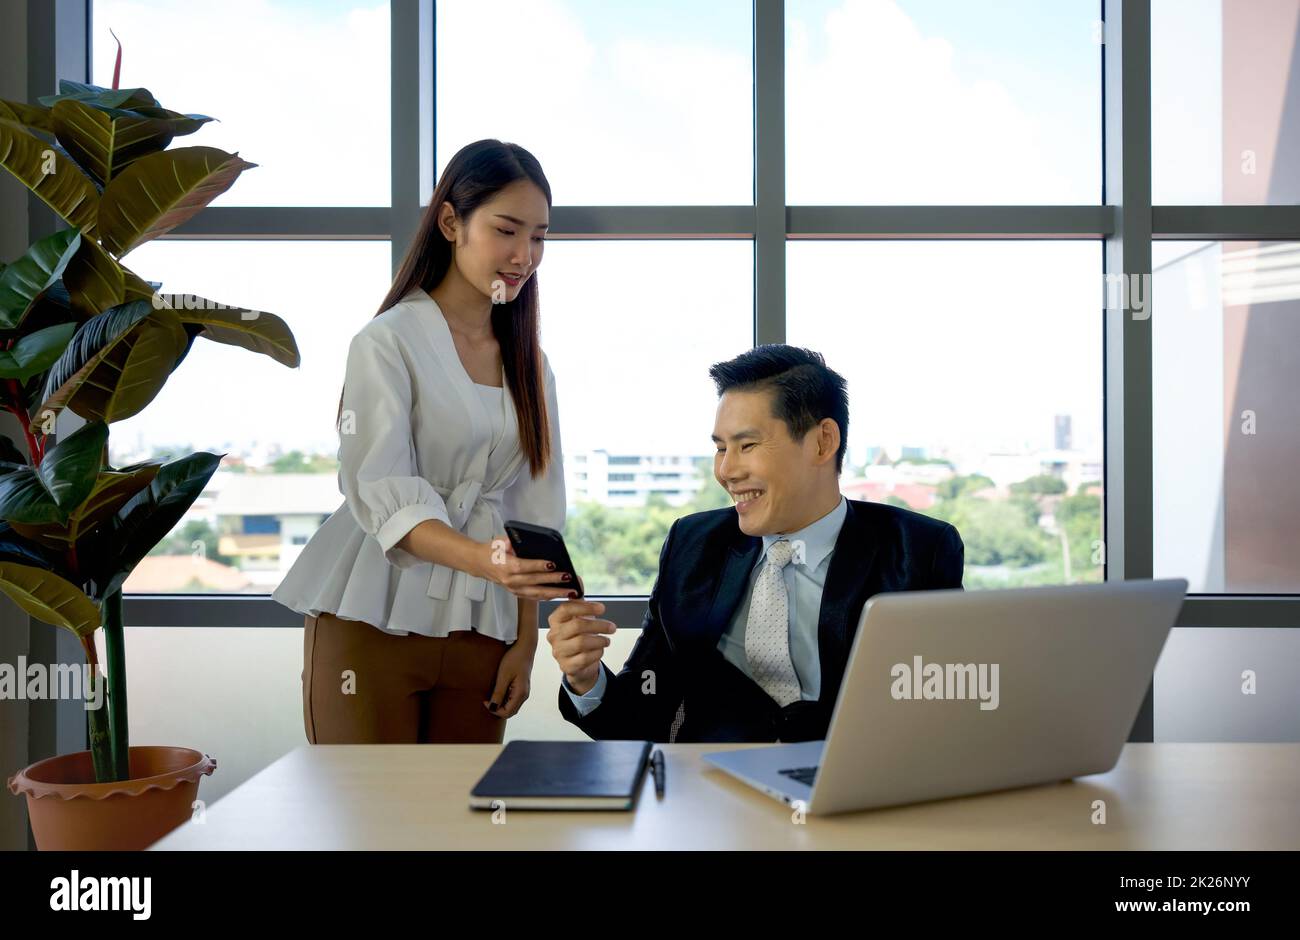 Die junge asiatische Sekretärin zeigt den täglichen Terminplan vom Smartphone bis zum Geschäftsführer in Anzug. Morgendliche Arbeitsatmosphäre in einem modernen Büro. Stockfoto